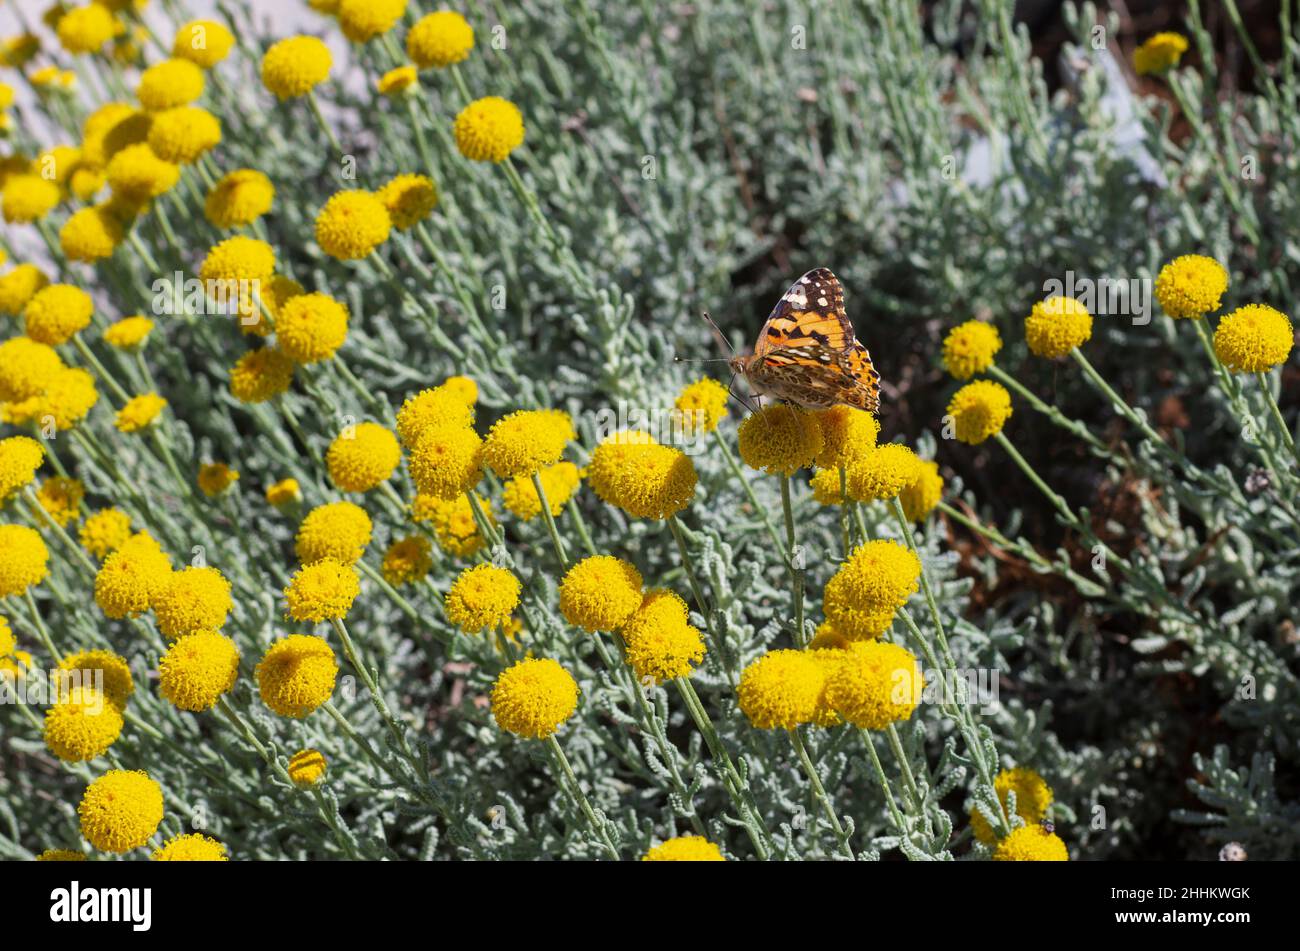 Sur le printemps des fleurs jaunes se trouve un papillon appelé petit tortoiseshell ou Aglais urticae (Rhodes, Grèce) Banque D'Images